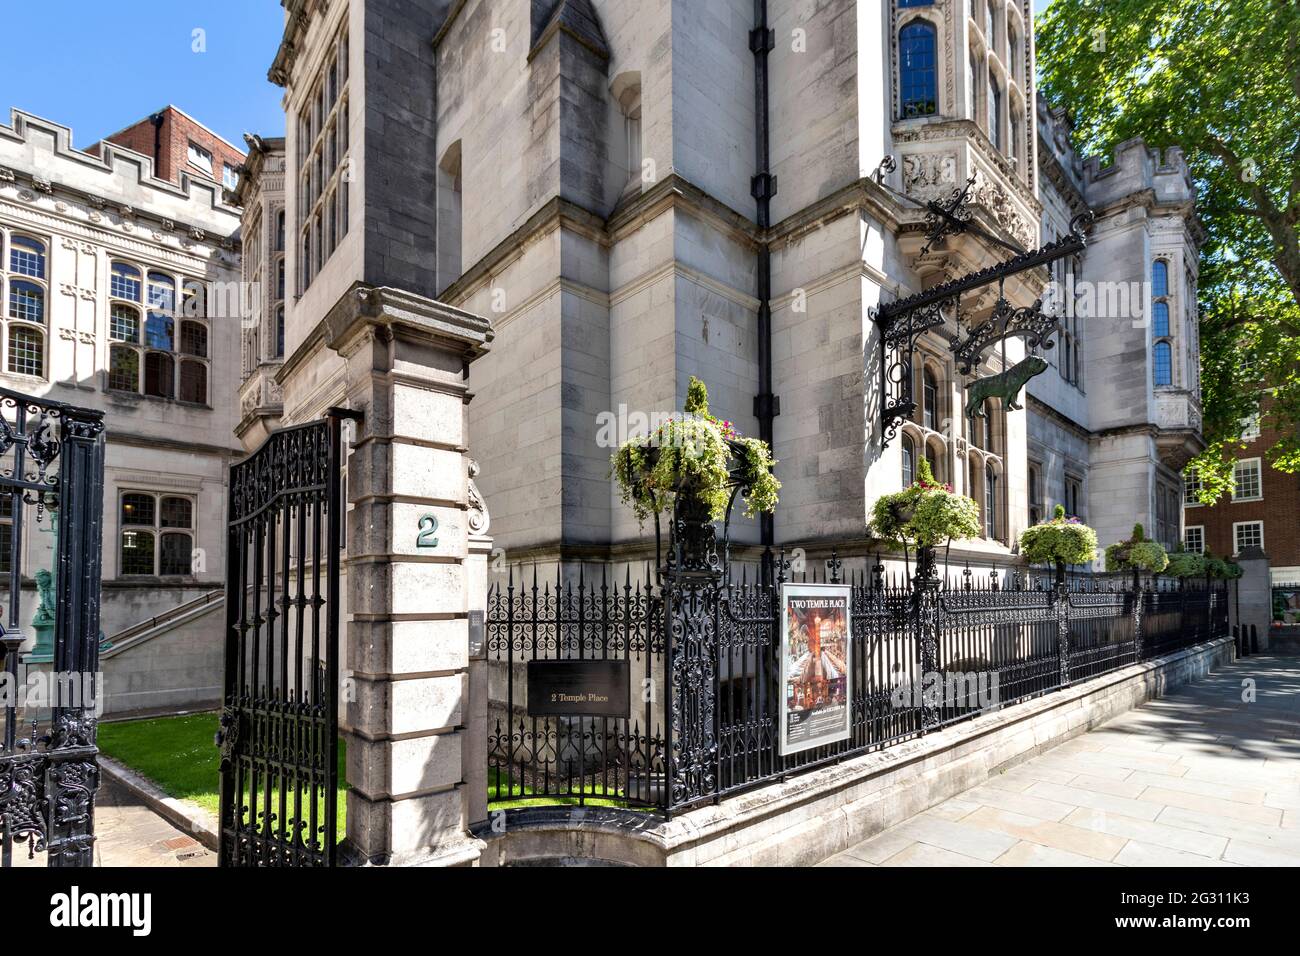 LONDRES ANGLETERRE DEUX TEMPLE PLACE OU ASTOR HOUSE VICTORIA REMBLAI Banque D'Images